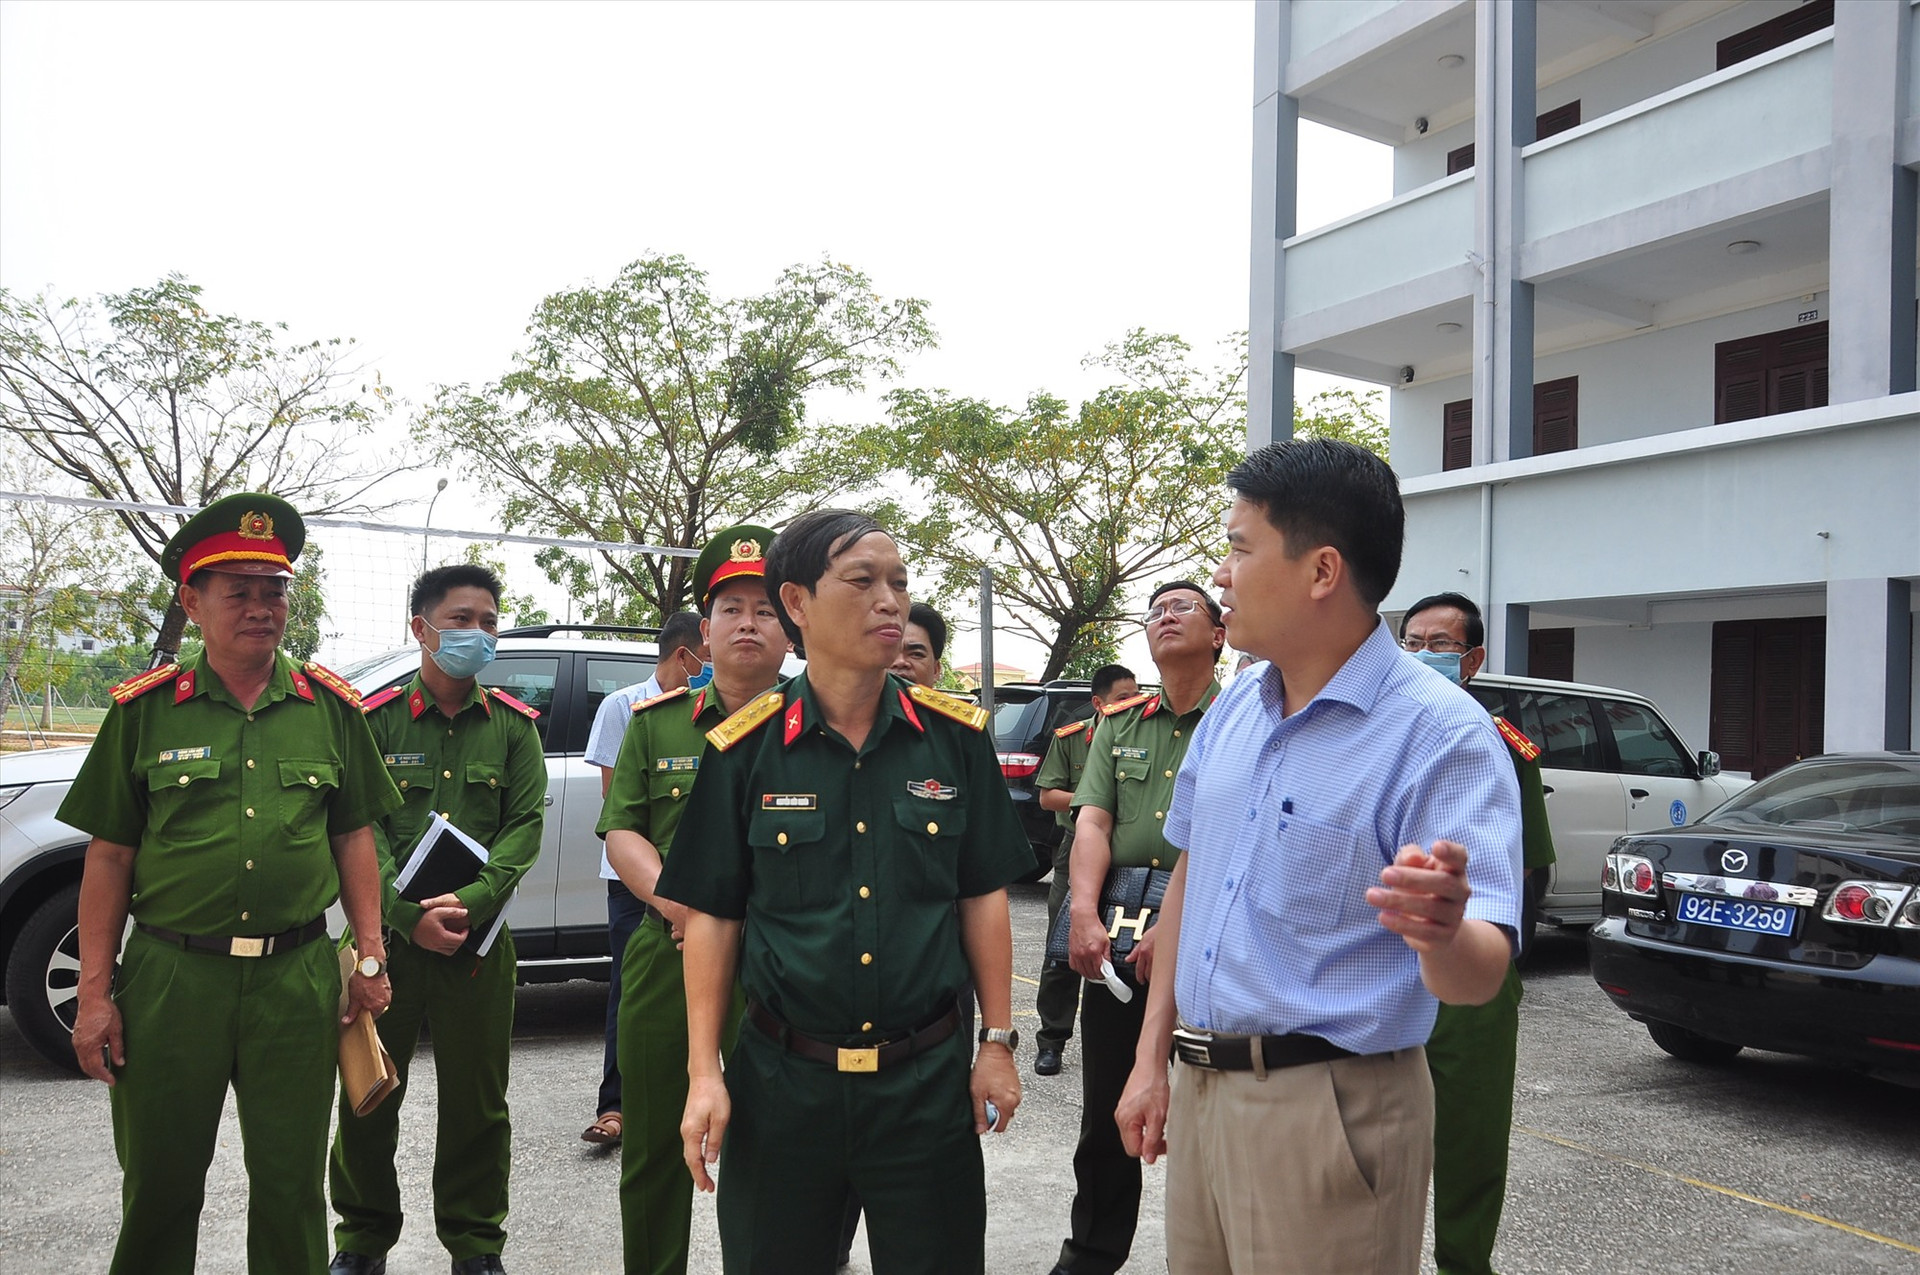 Phó Chủ tịch UBND tỉnh Trần Văn Tâm trao đổi với lãnh đạo Bộ Chỉ huy Quân sự tỉnh về công tác chuẩn bị khu vực cách ly tập trung. Ảnh: VINH ANH